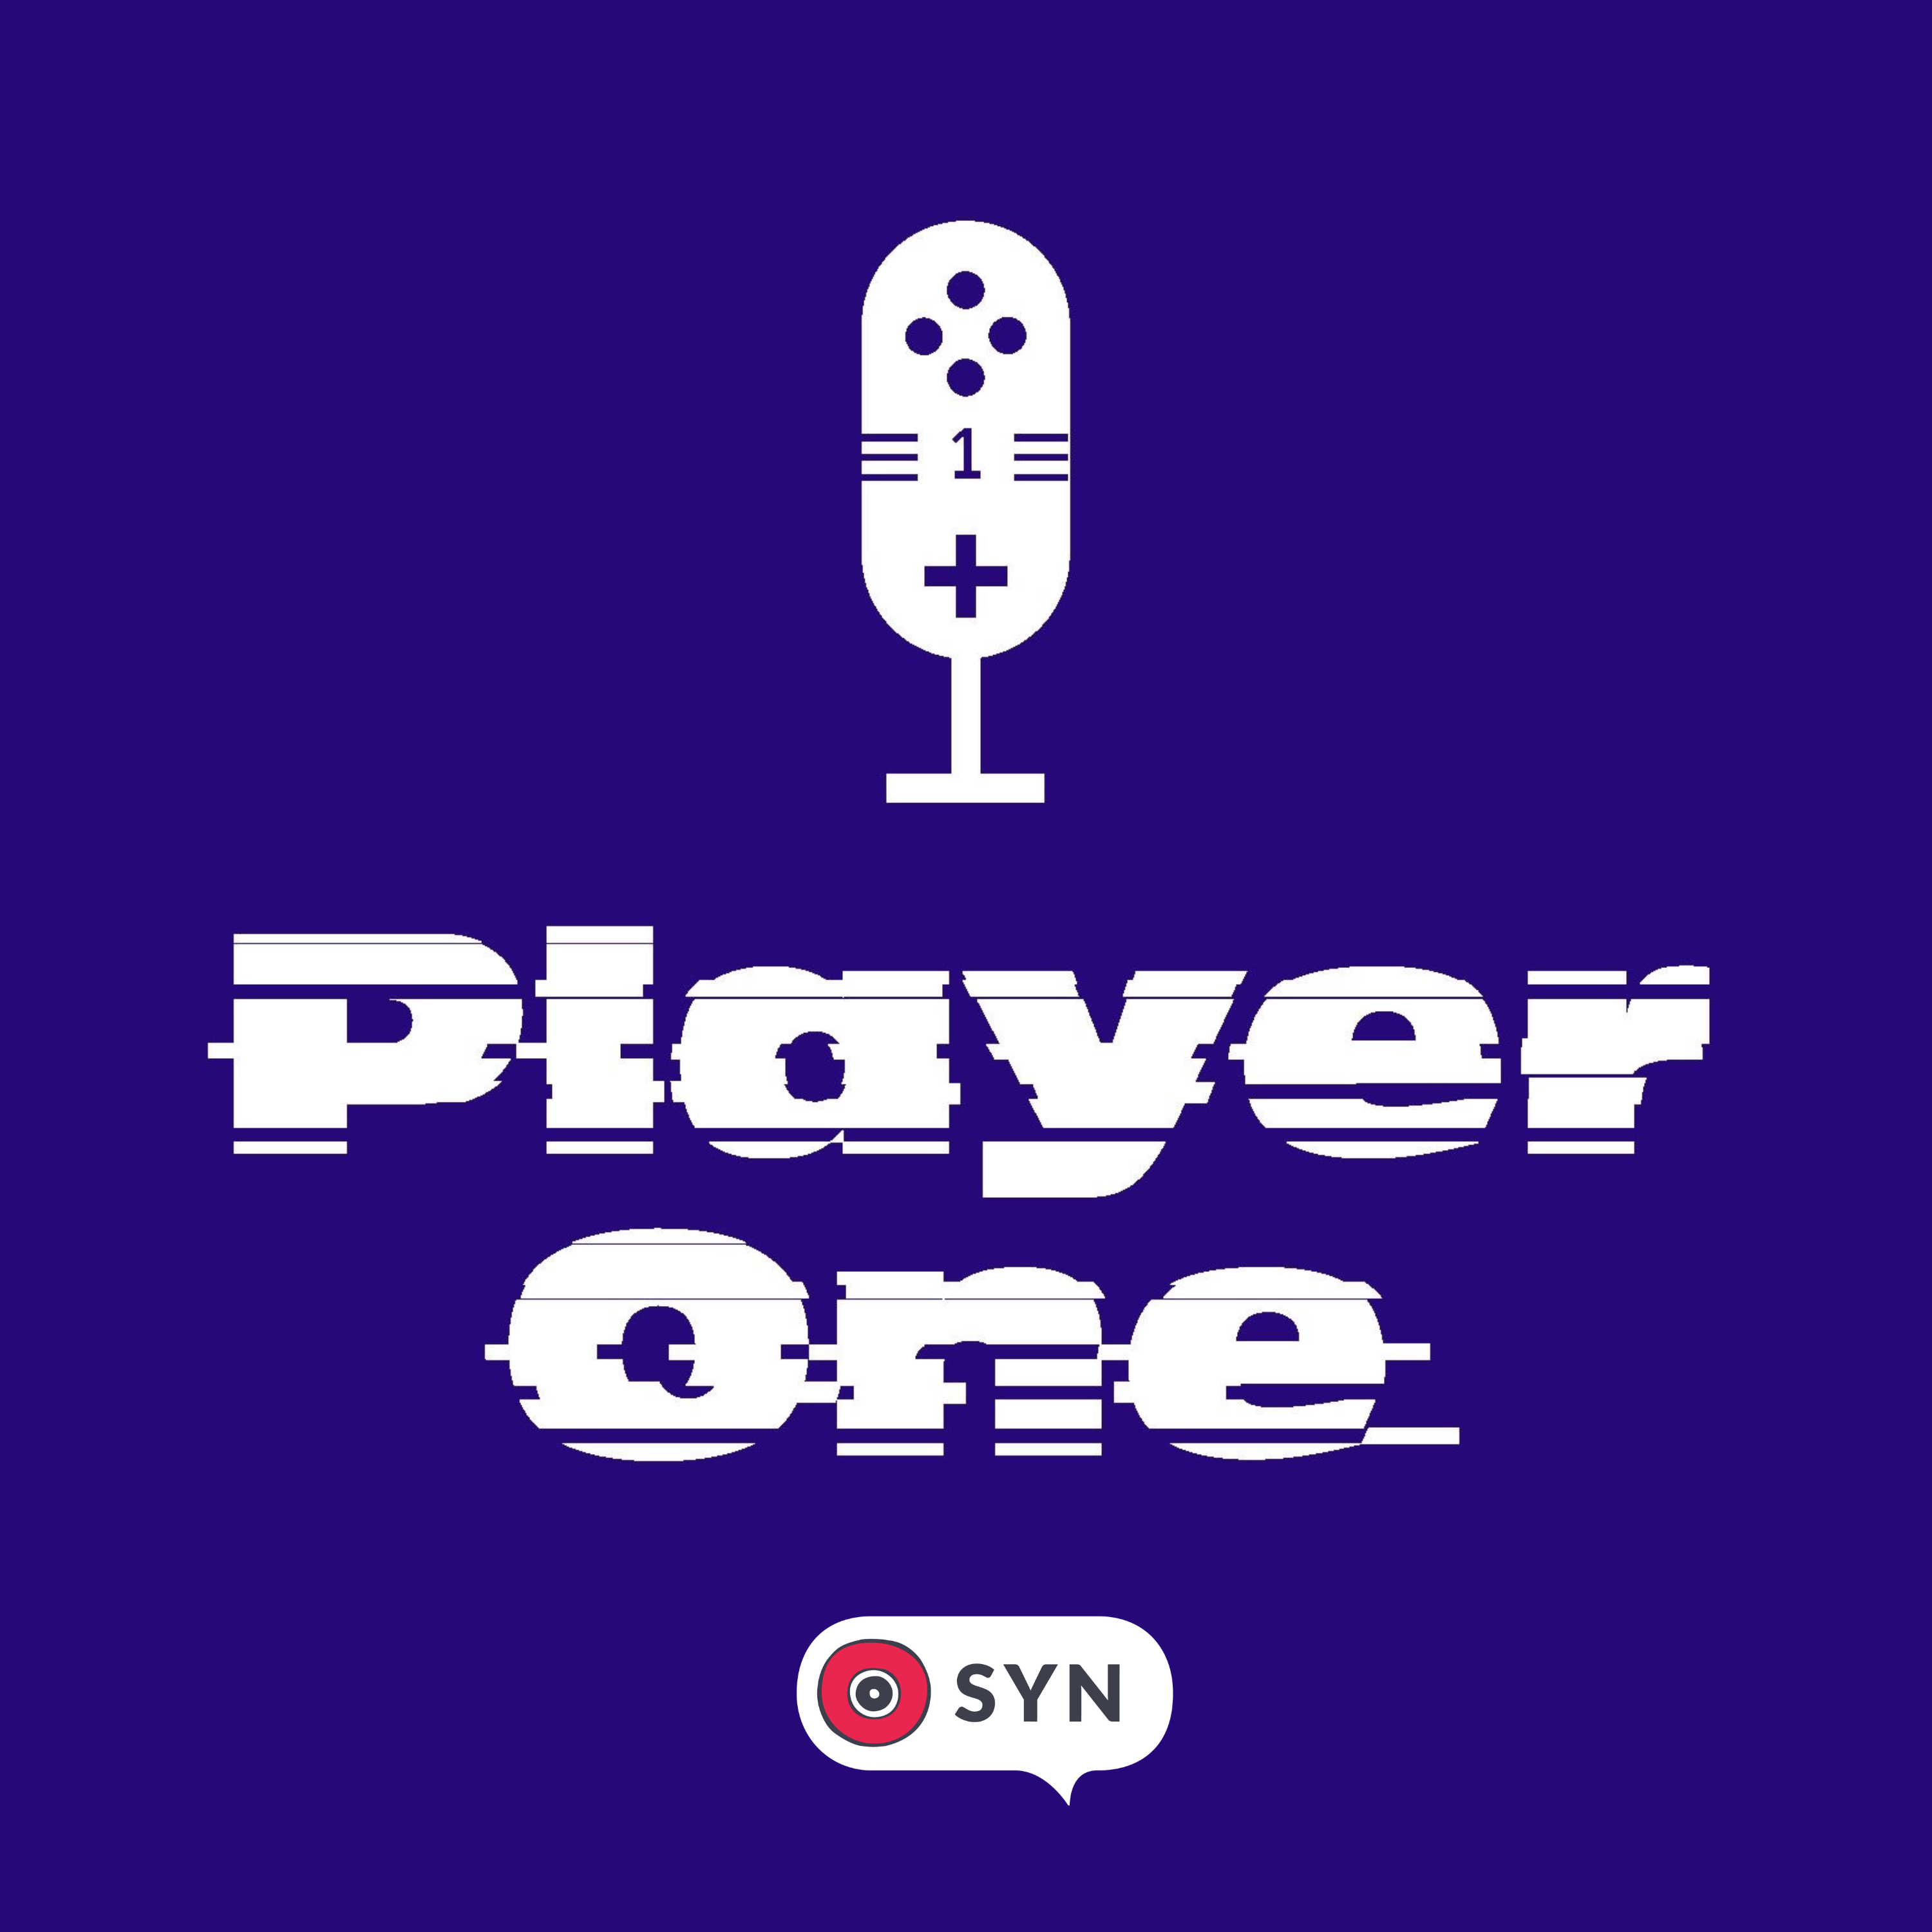 Player One Interviews: Gwen Frey